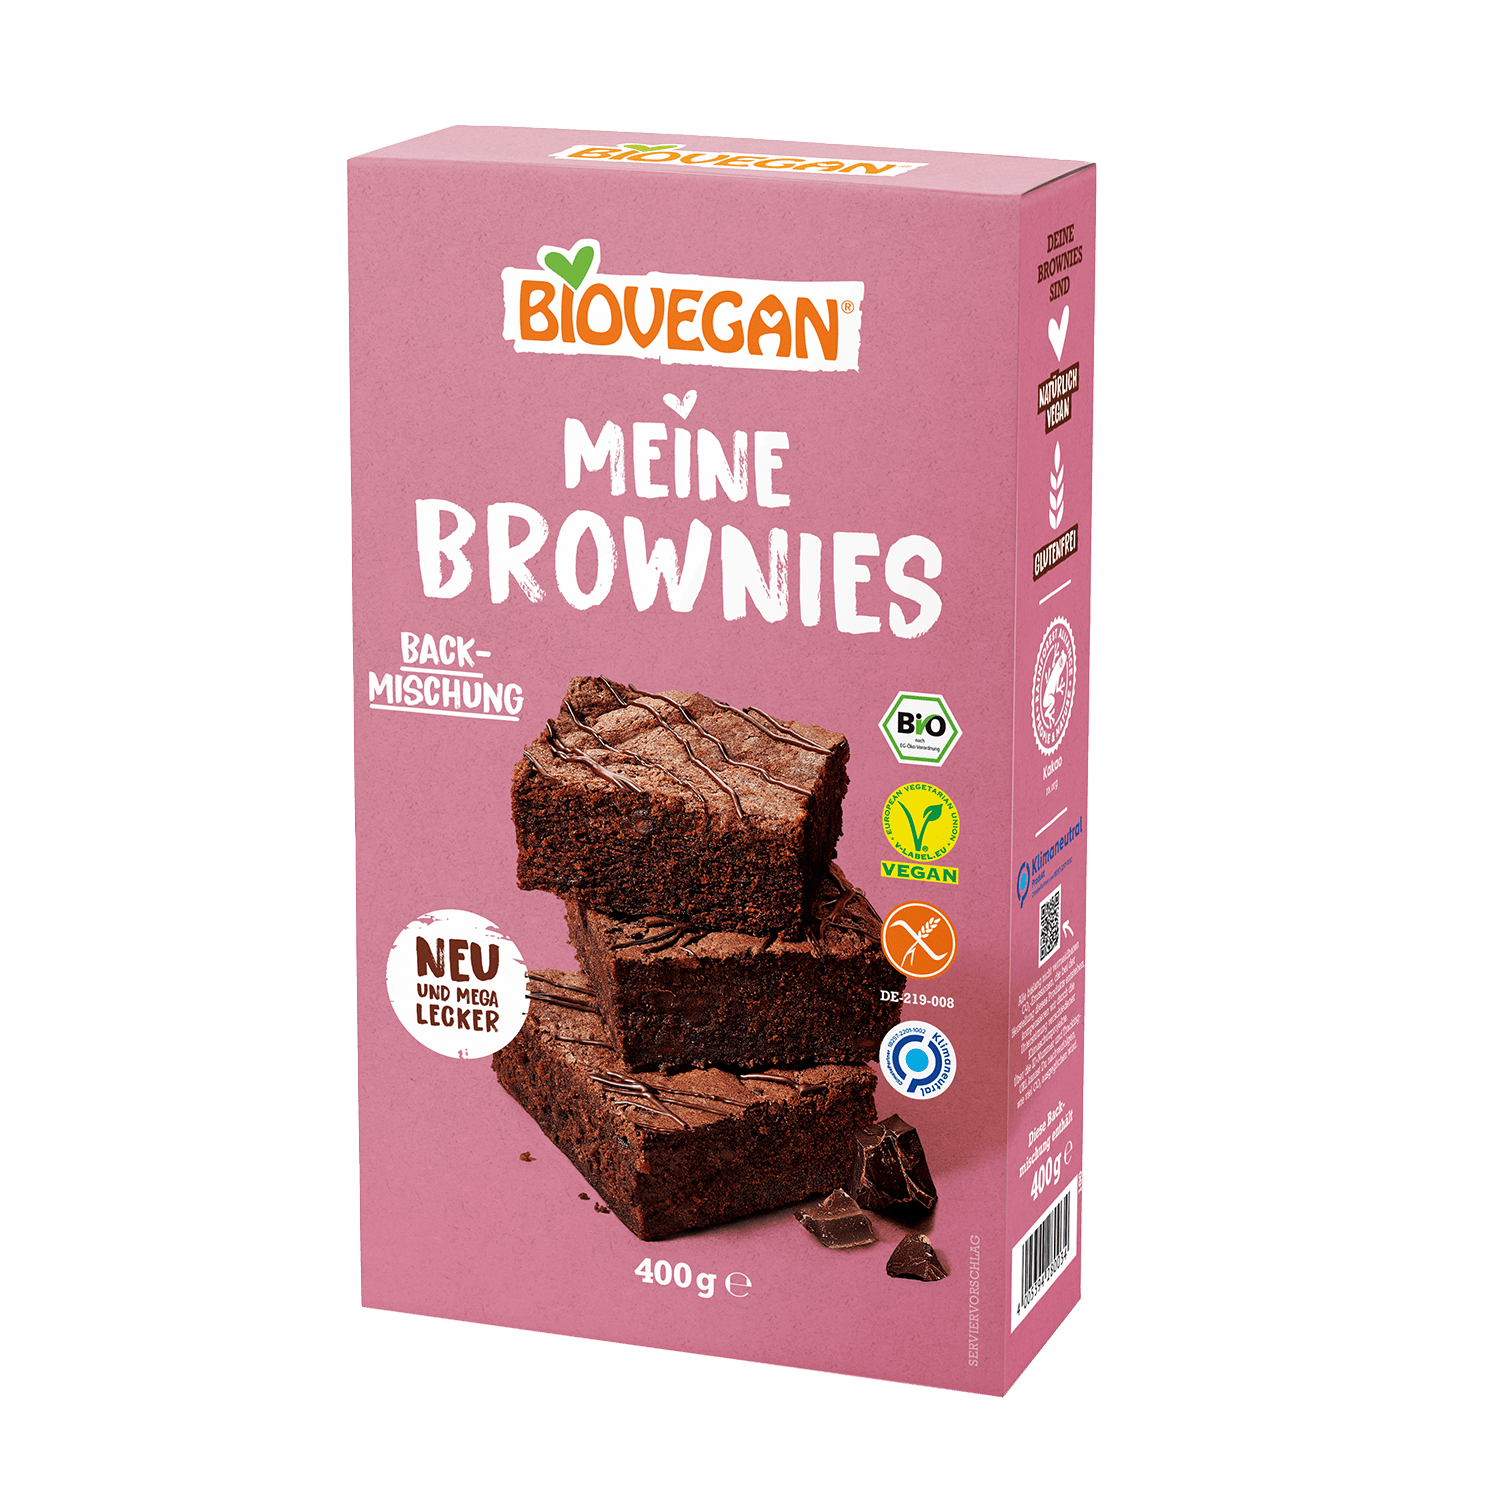 My Brownies Baking Mix, Organic, 400g